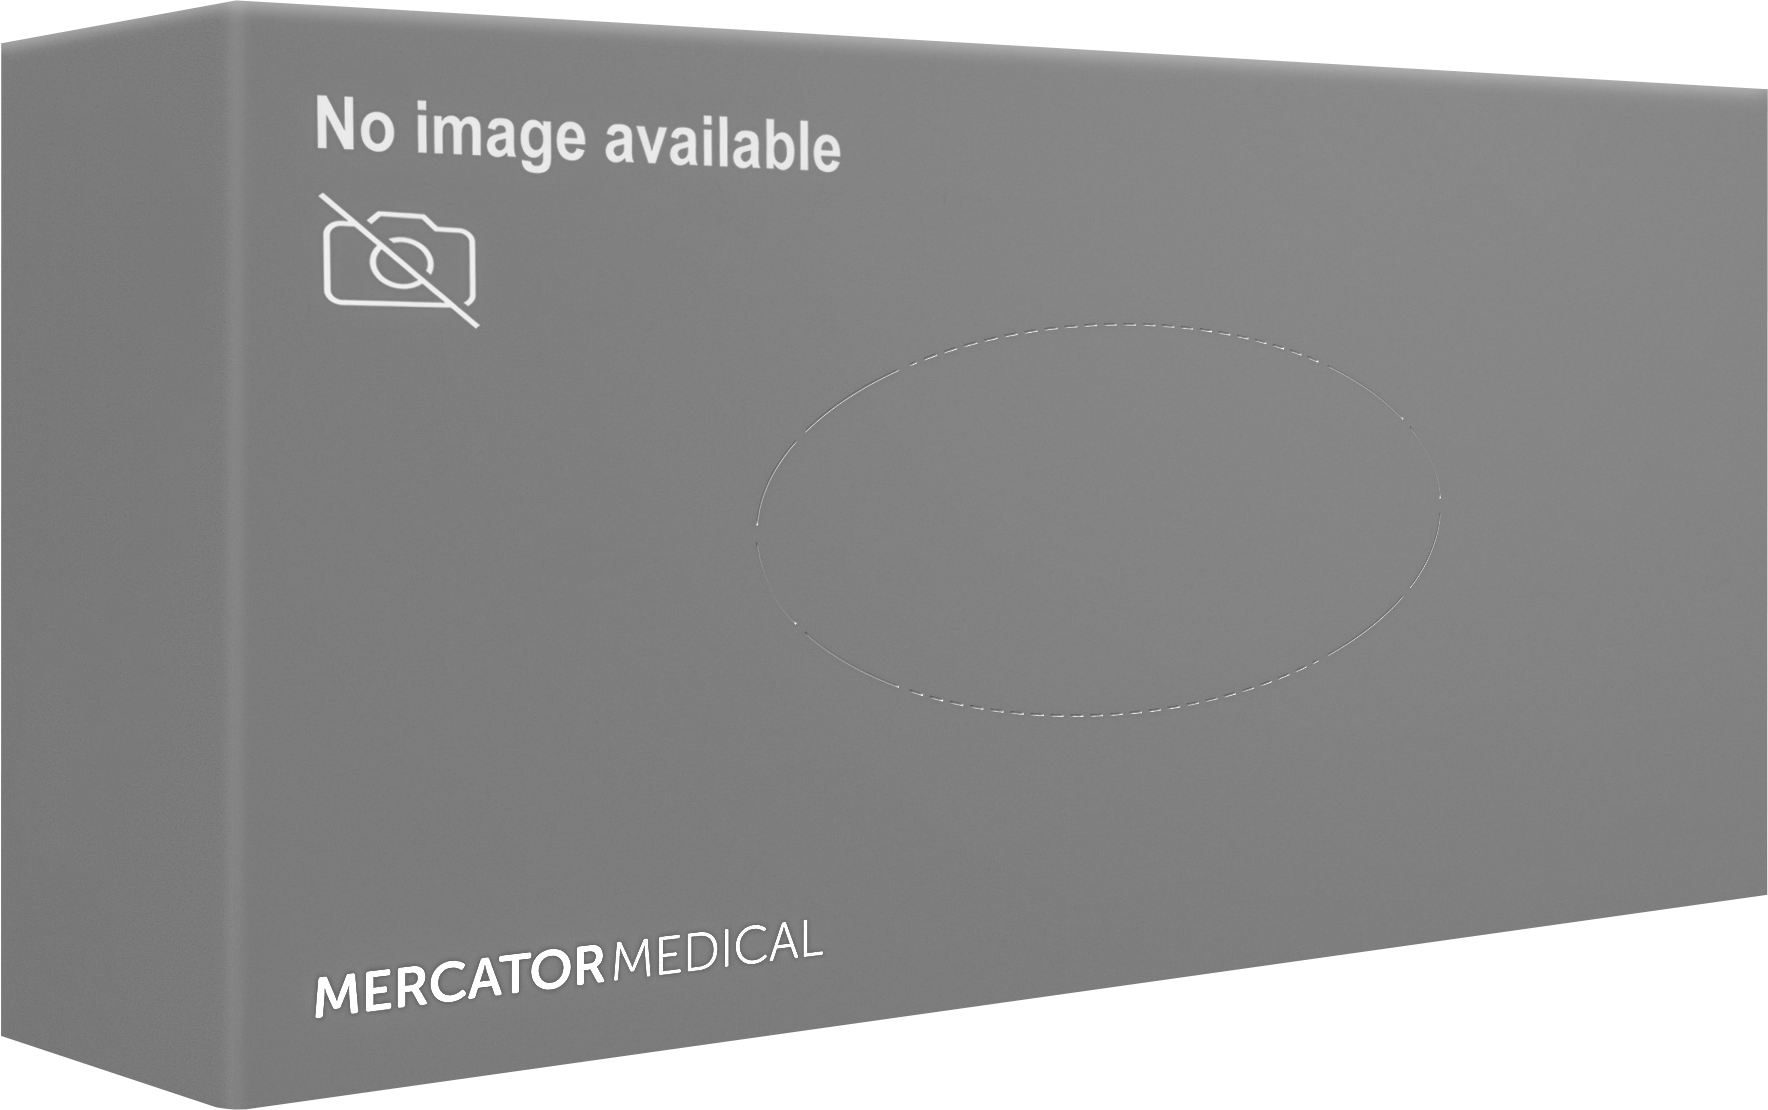 MERCATOR gogrip black  Mercator Medical – fabricant de gants et de  matériel médical à usage unique